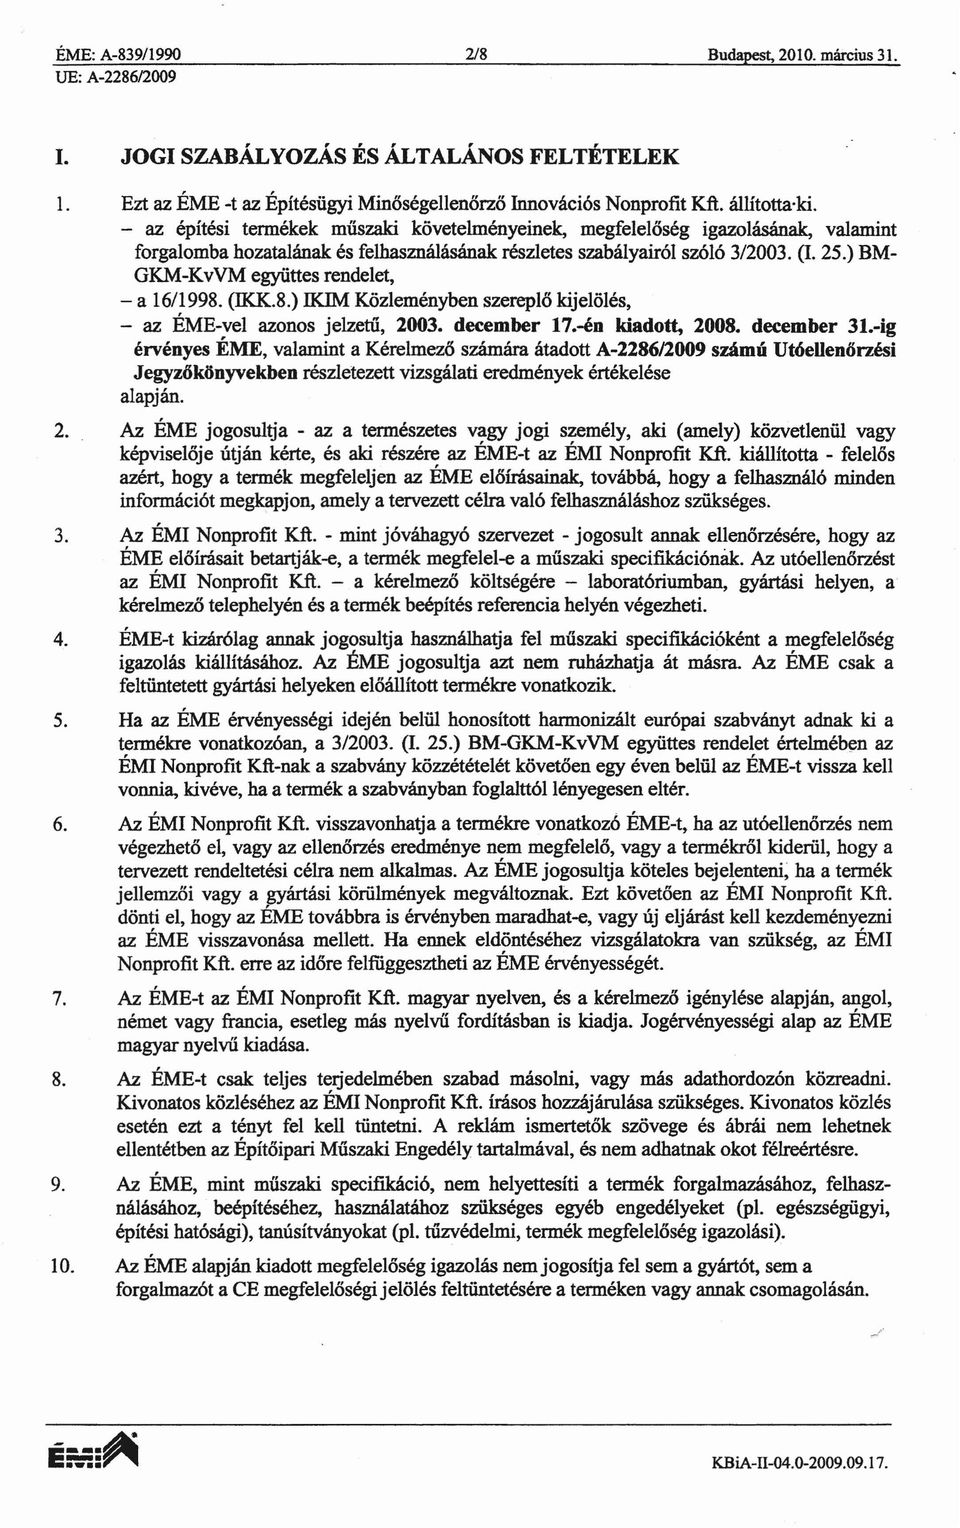 ) BM GKM-KvVM egyiittes rendelet, - a 16/1998. (IKK.8.)!KIM Kozlemenyben szereplo kijeloles, - az EME-vel azonos jelzetti, 2003. december 17.-en kiado~ 2008. december 31.